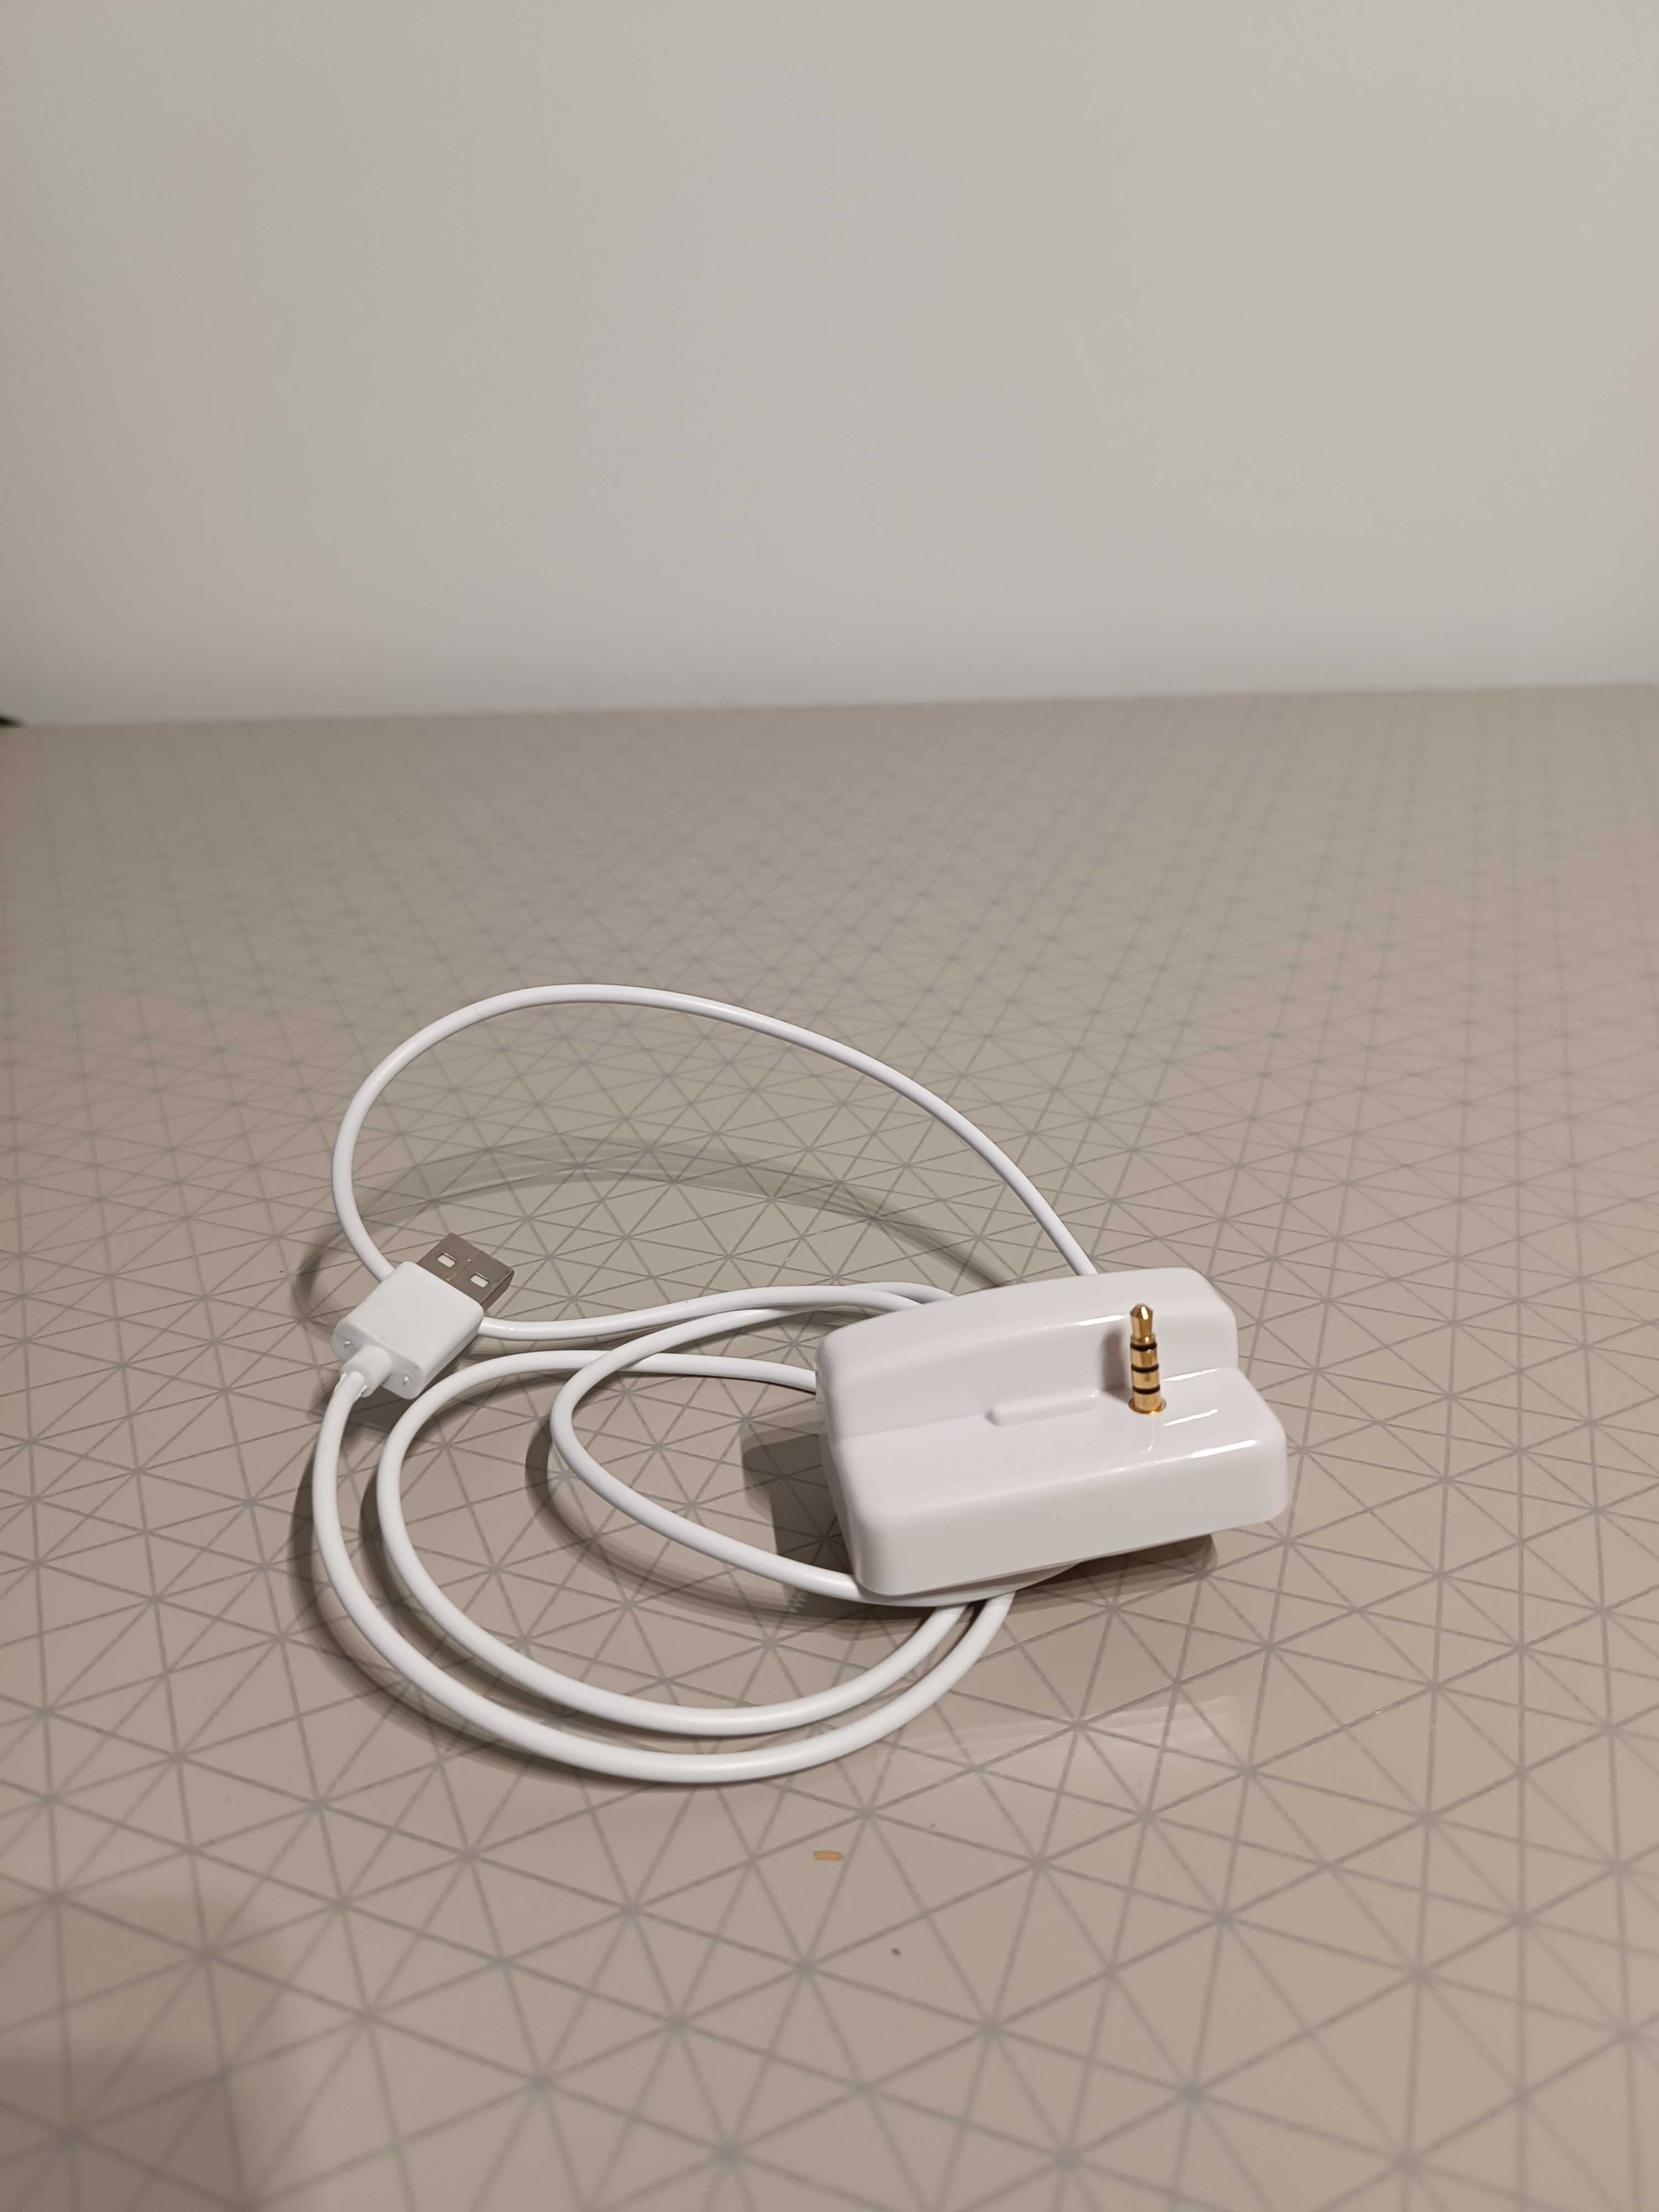 Biała stacja dokująca z ładowarką USB do iPoda